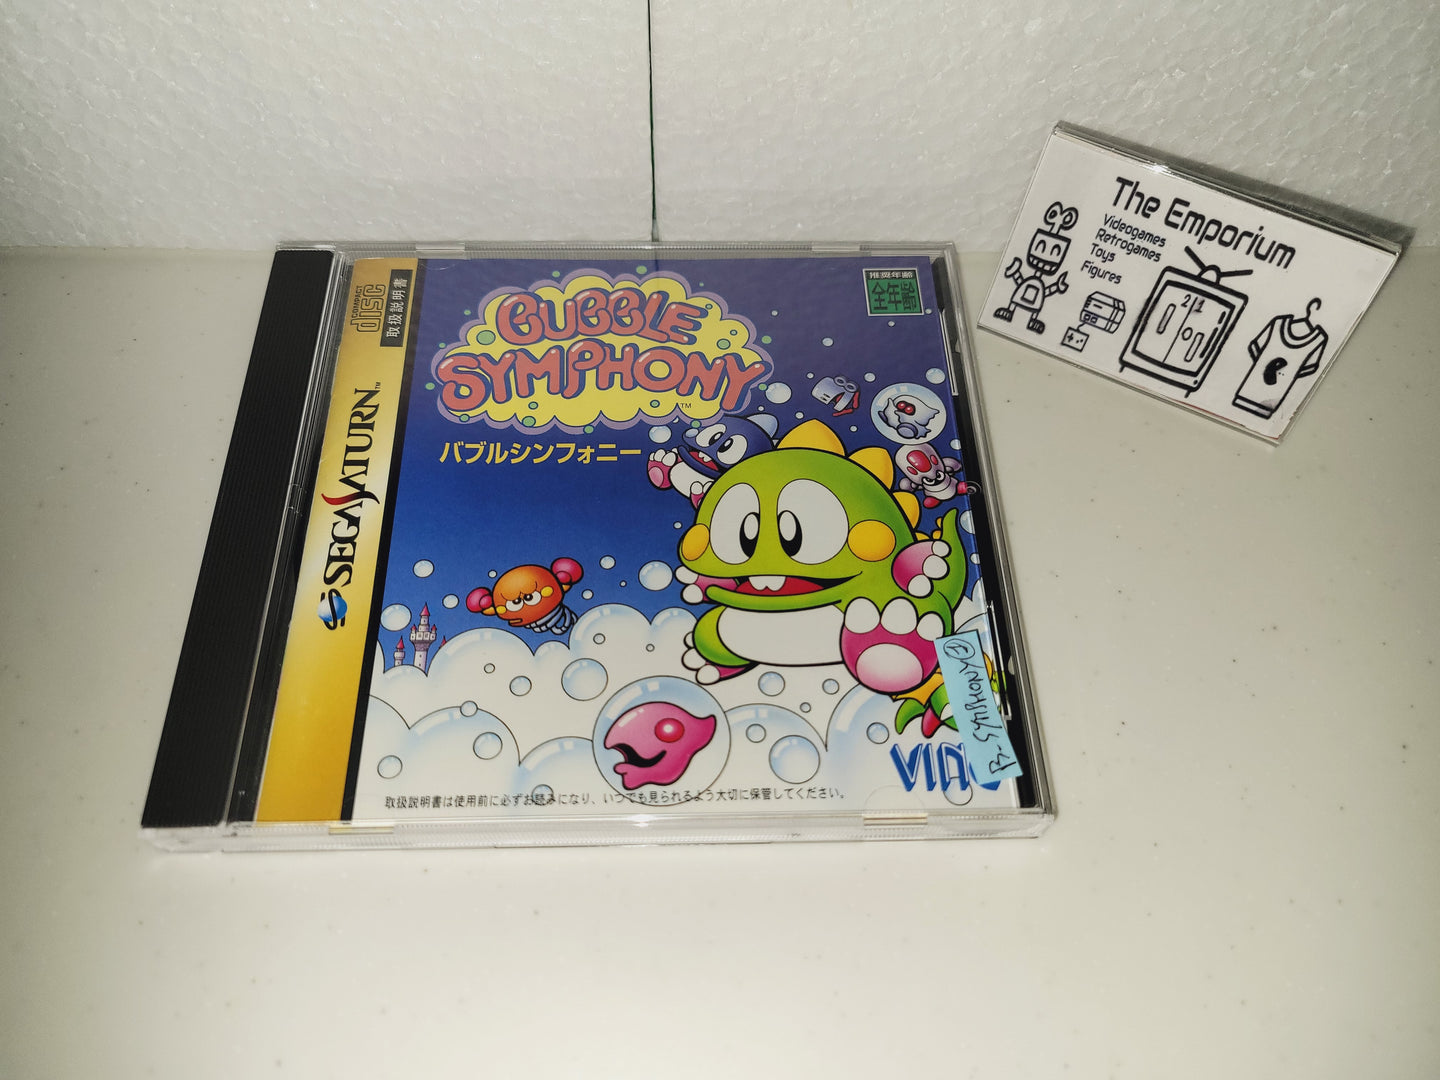 Bubble Symphony - Sega Saturn sat stn